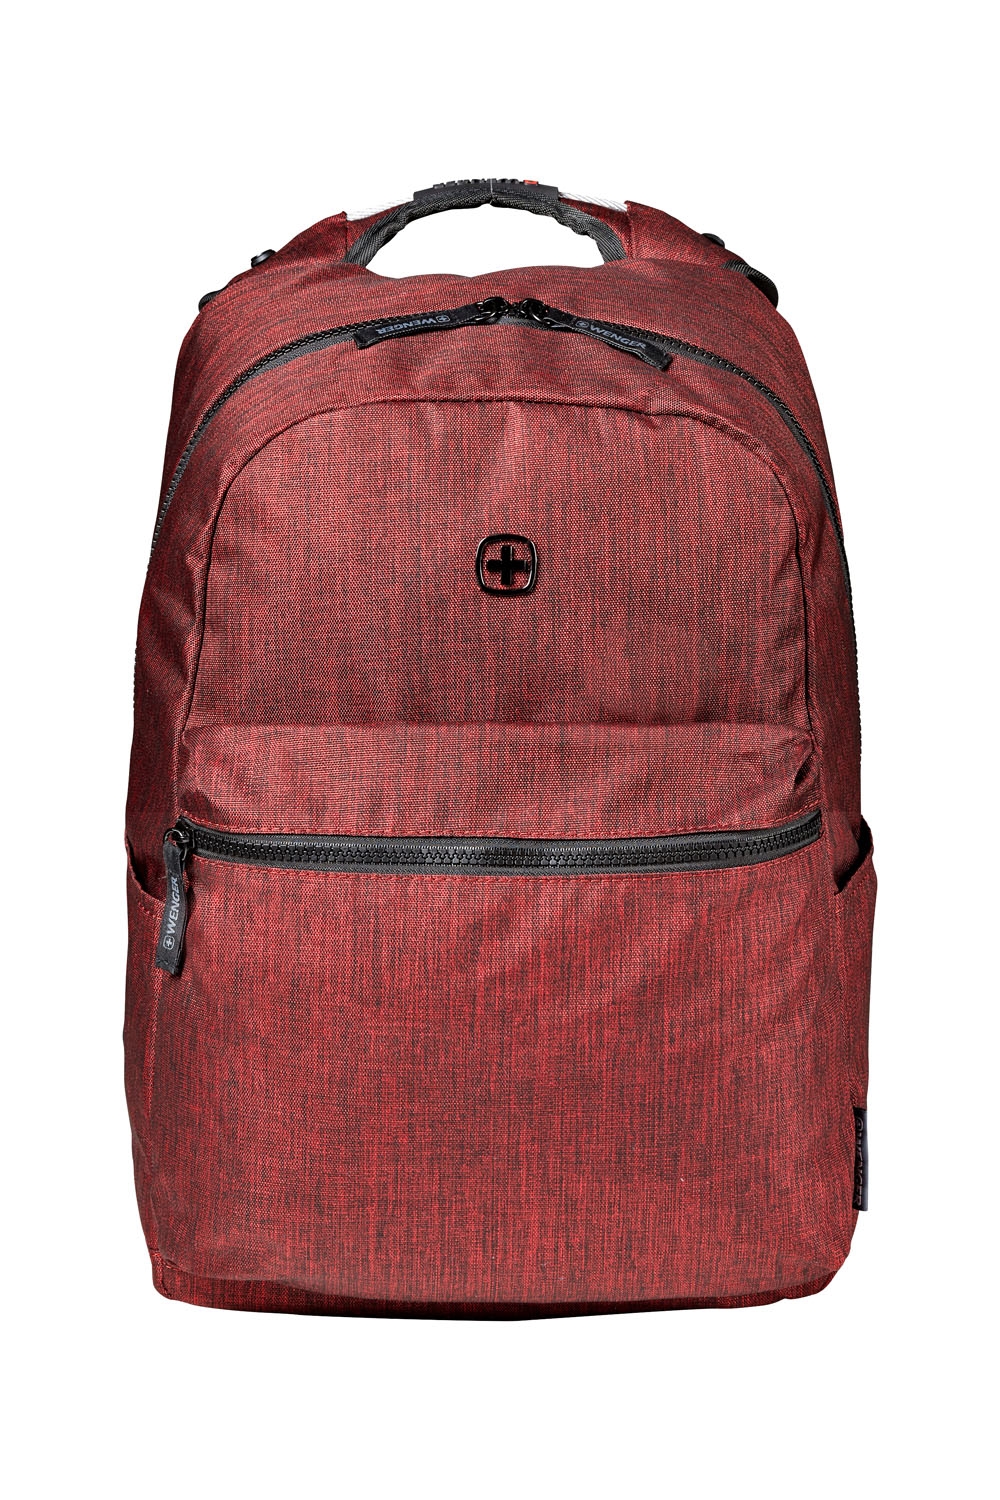 Рюкзак WENGER 14'', бордовый, полиэстер, 31 x 24 x 42 см, 22 л, бордовый